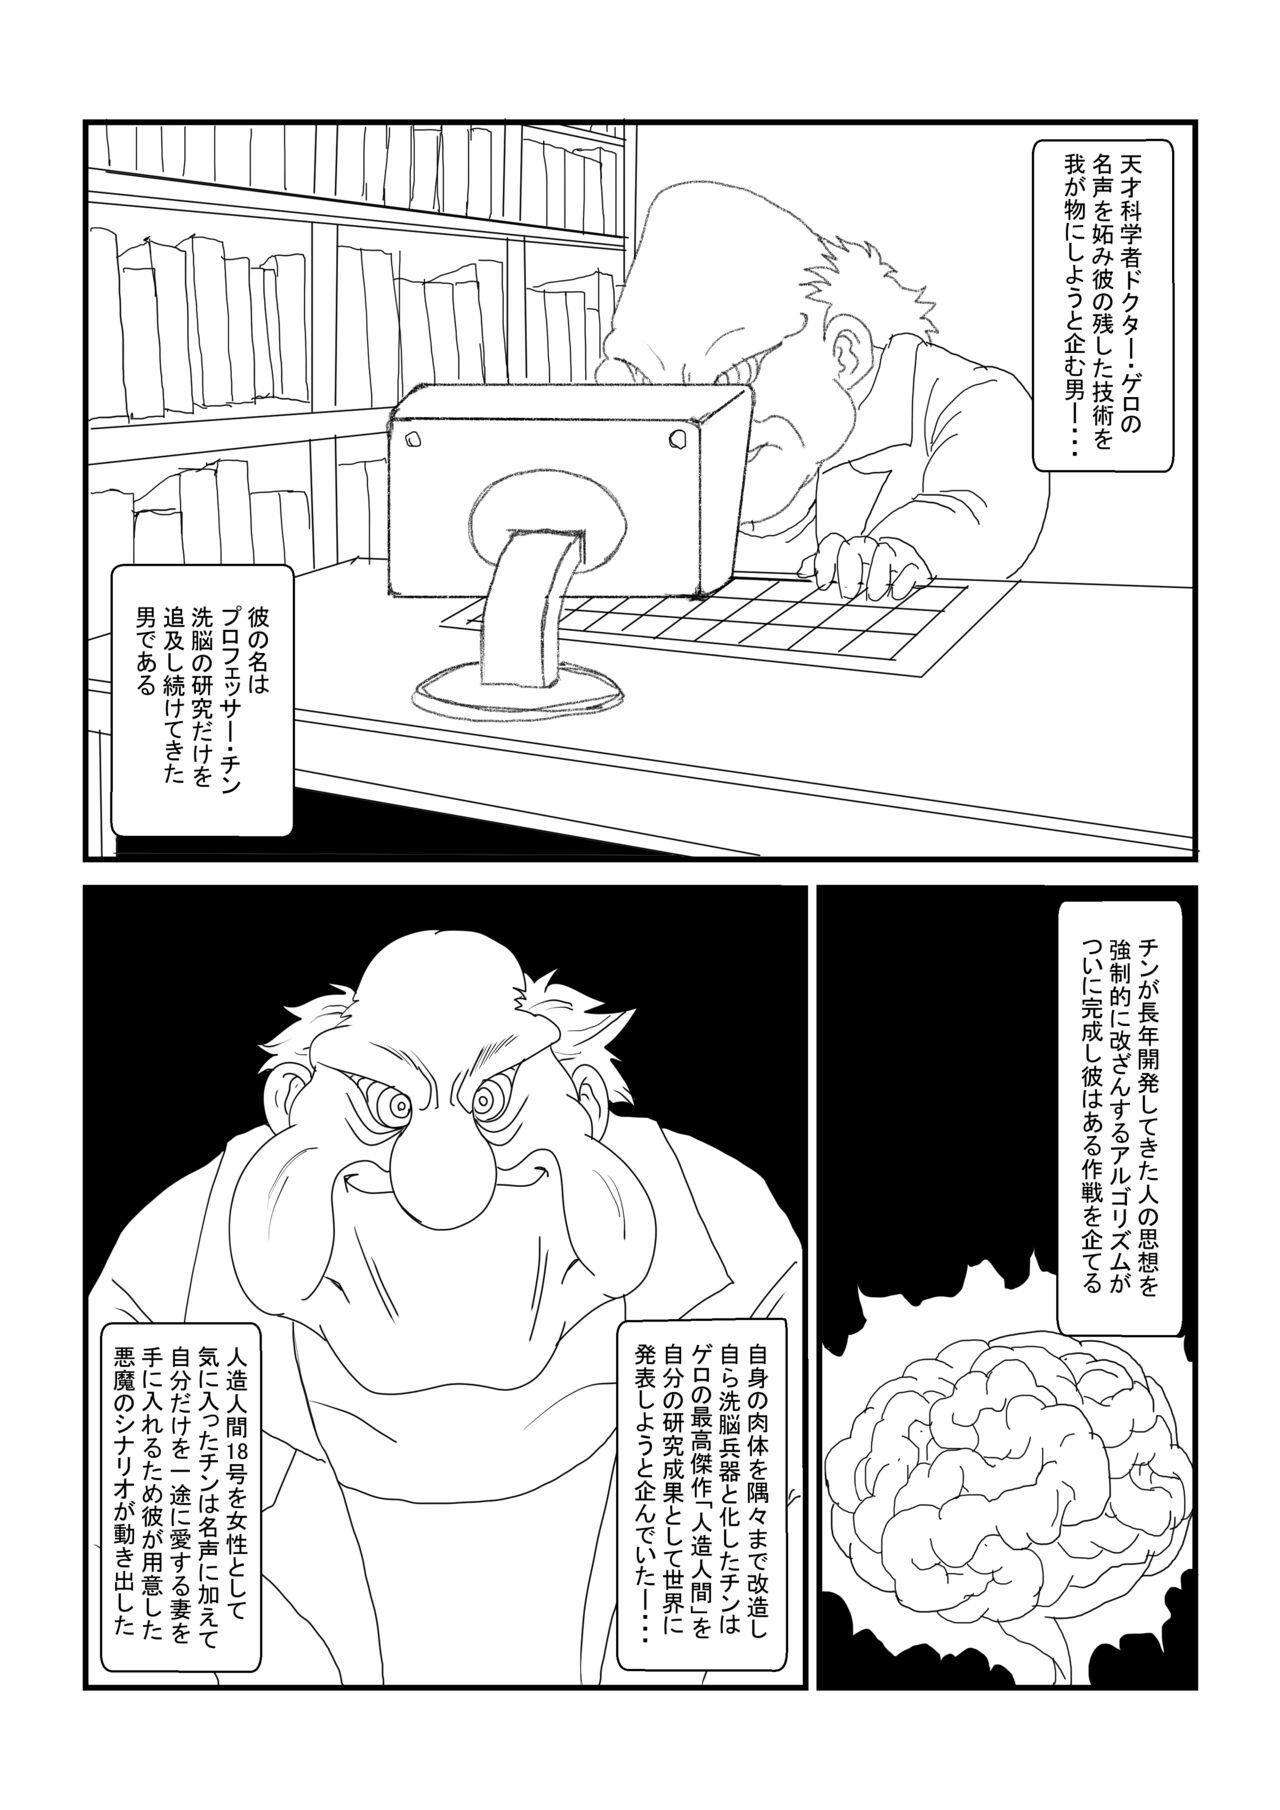 Stunning Re:洗脳教育室～人造○間18号編～其之一 - Dragon ball z Student - Page 2